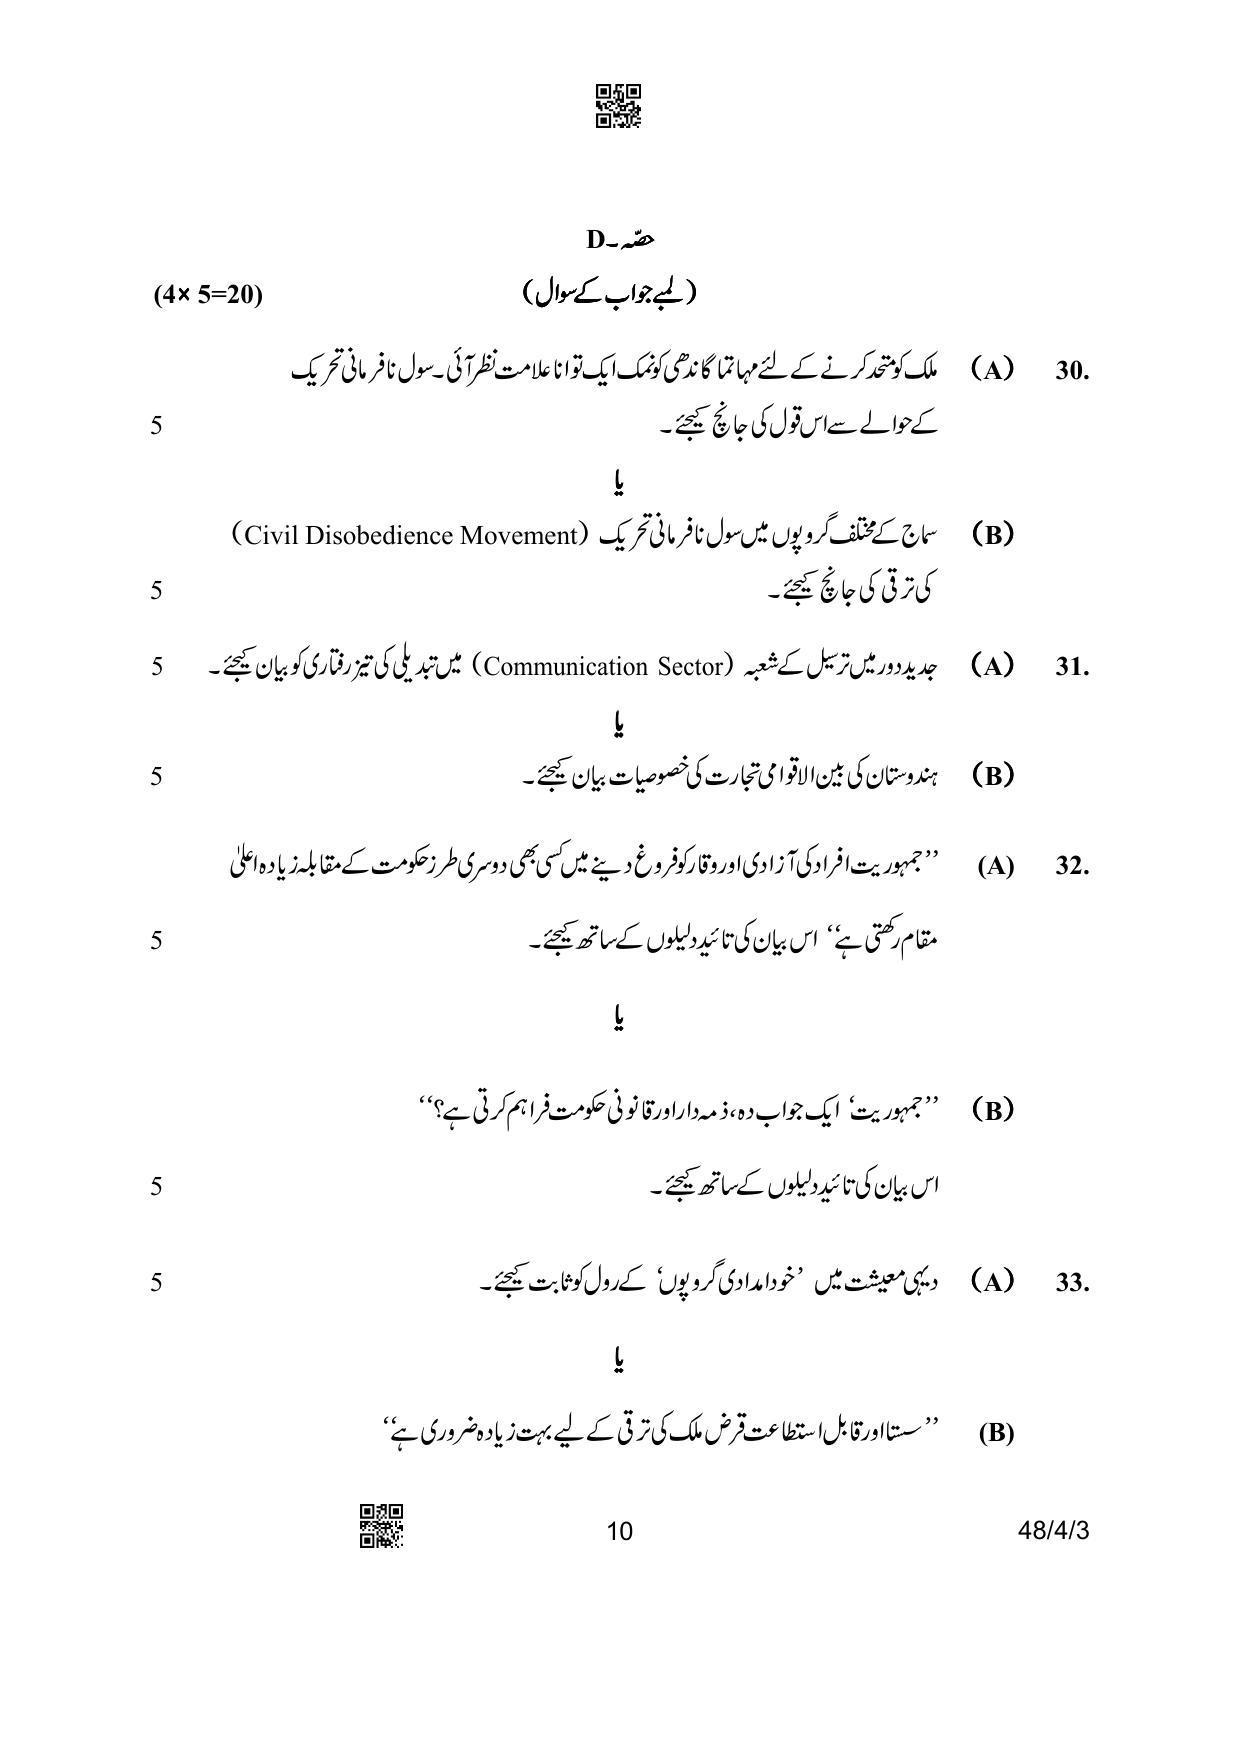 CBSE Class 10 48-4-3 Social Science Urdu Version 2023 Question Paper - Page 10